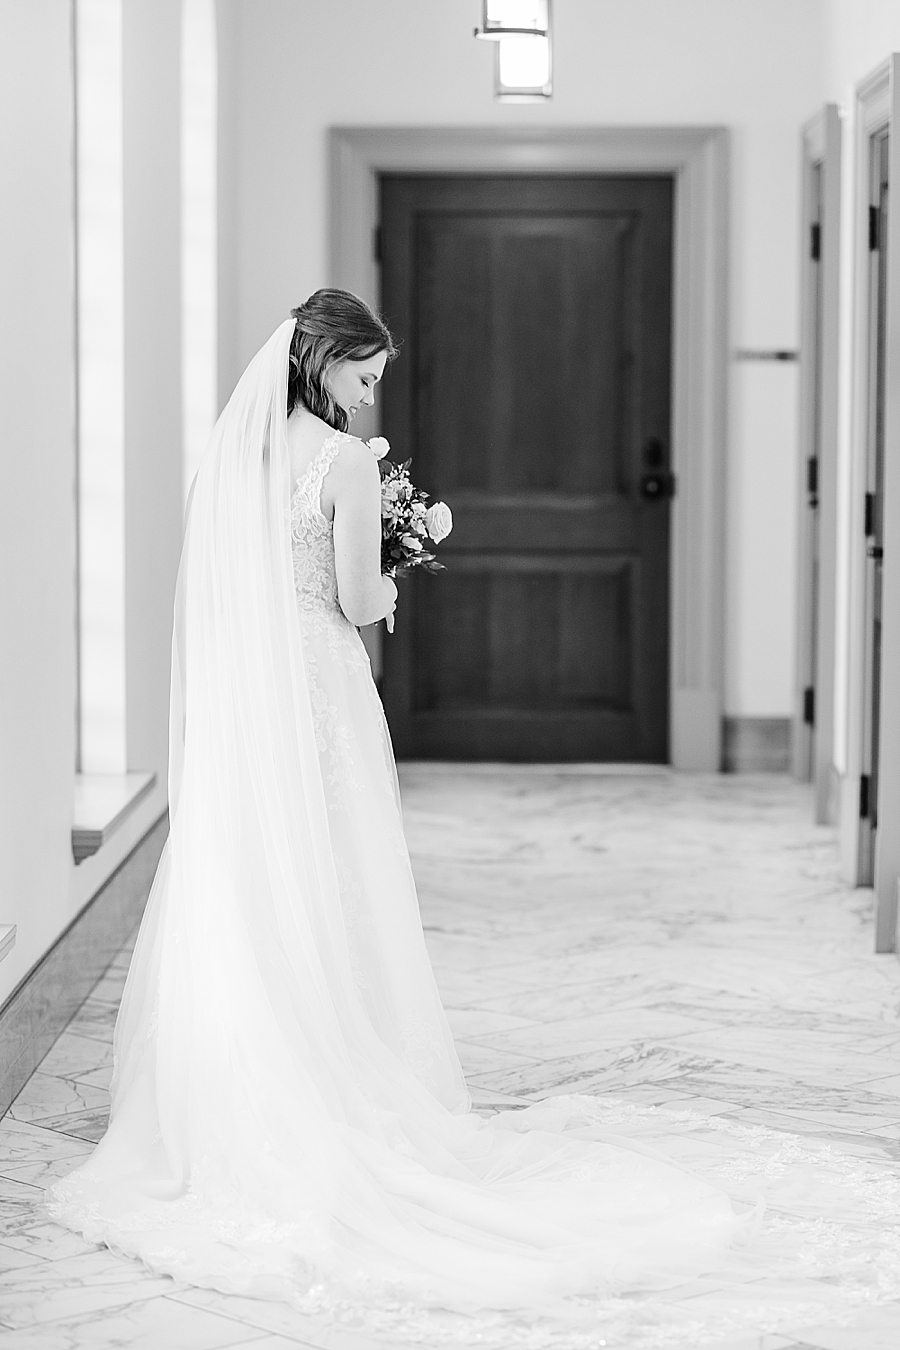 Bride looking at dress at Julianna Wedding by Amanda May Photos 